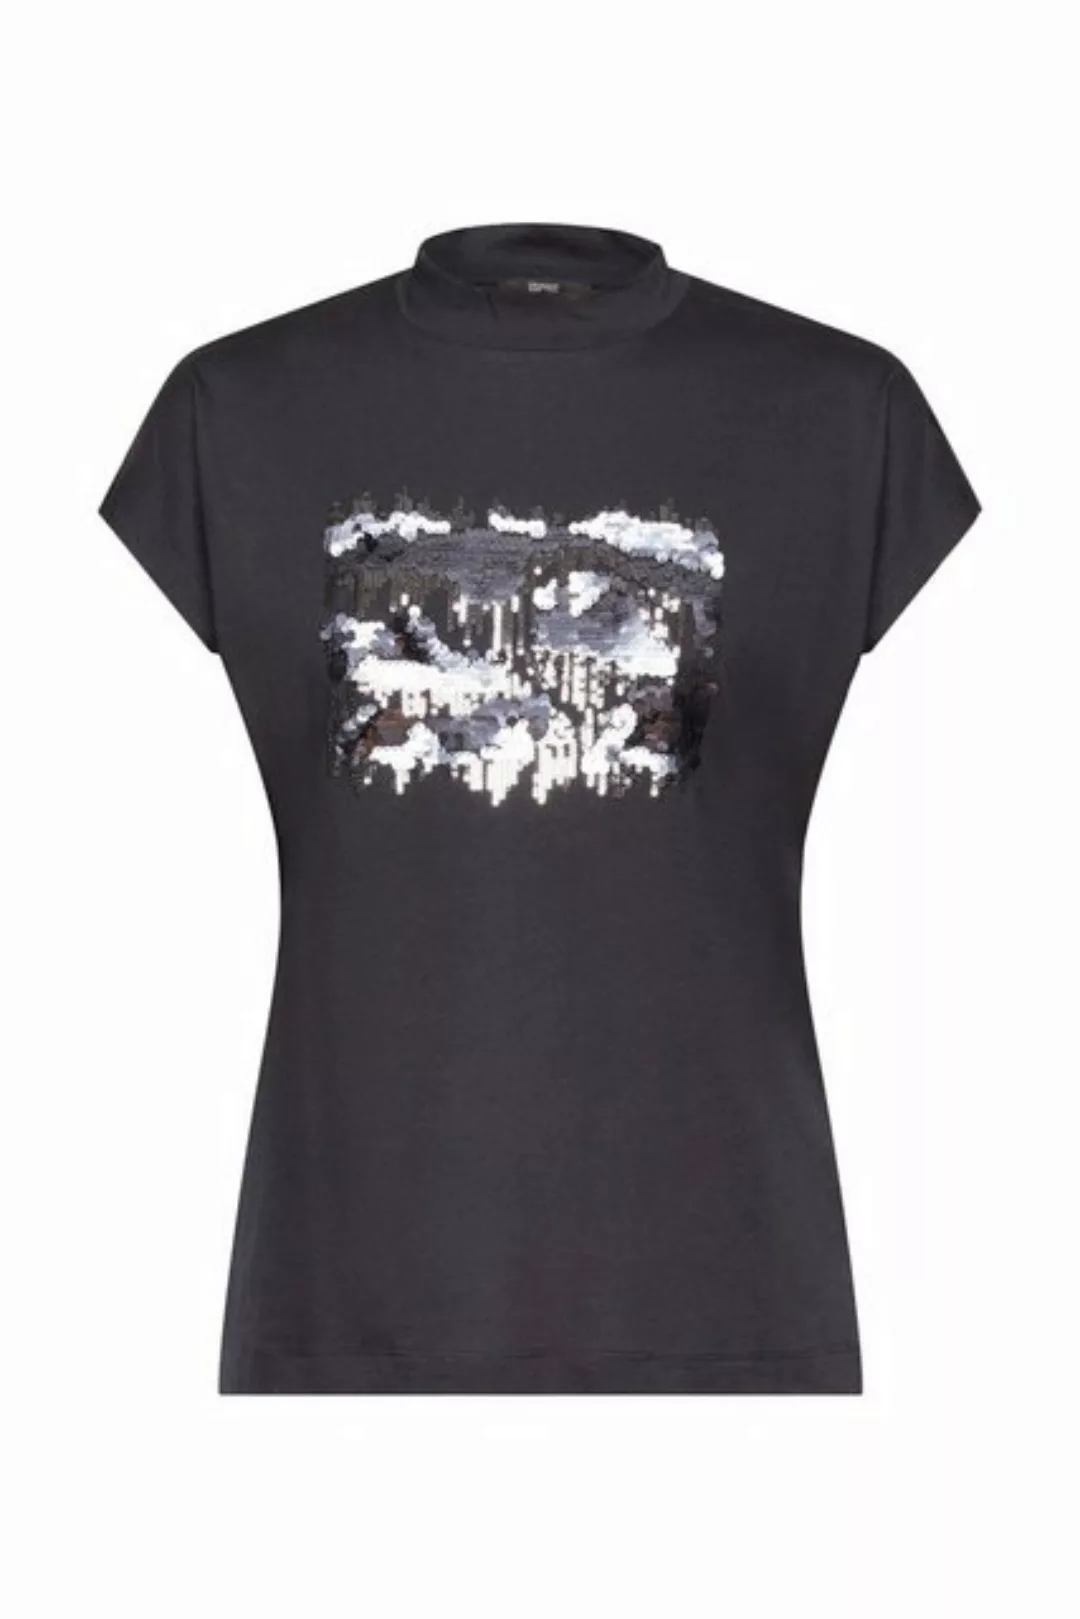 Esprit T-Shirt günstig online kaufen